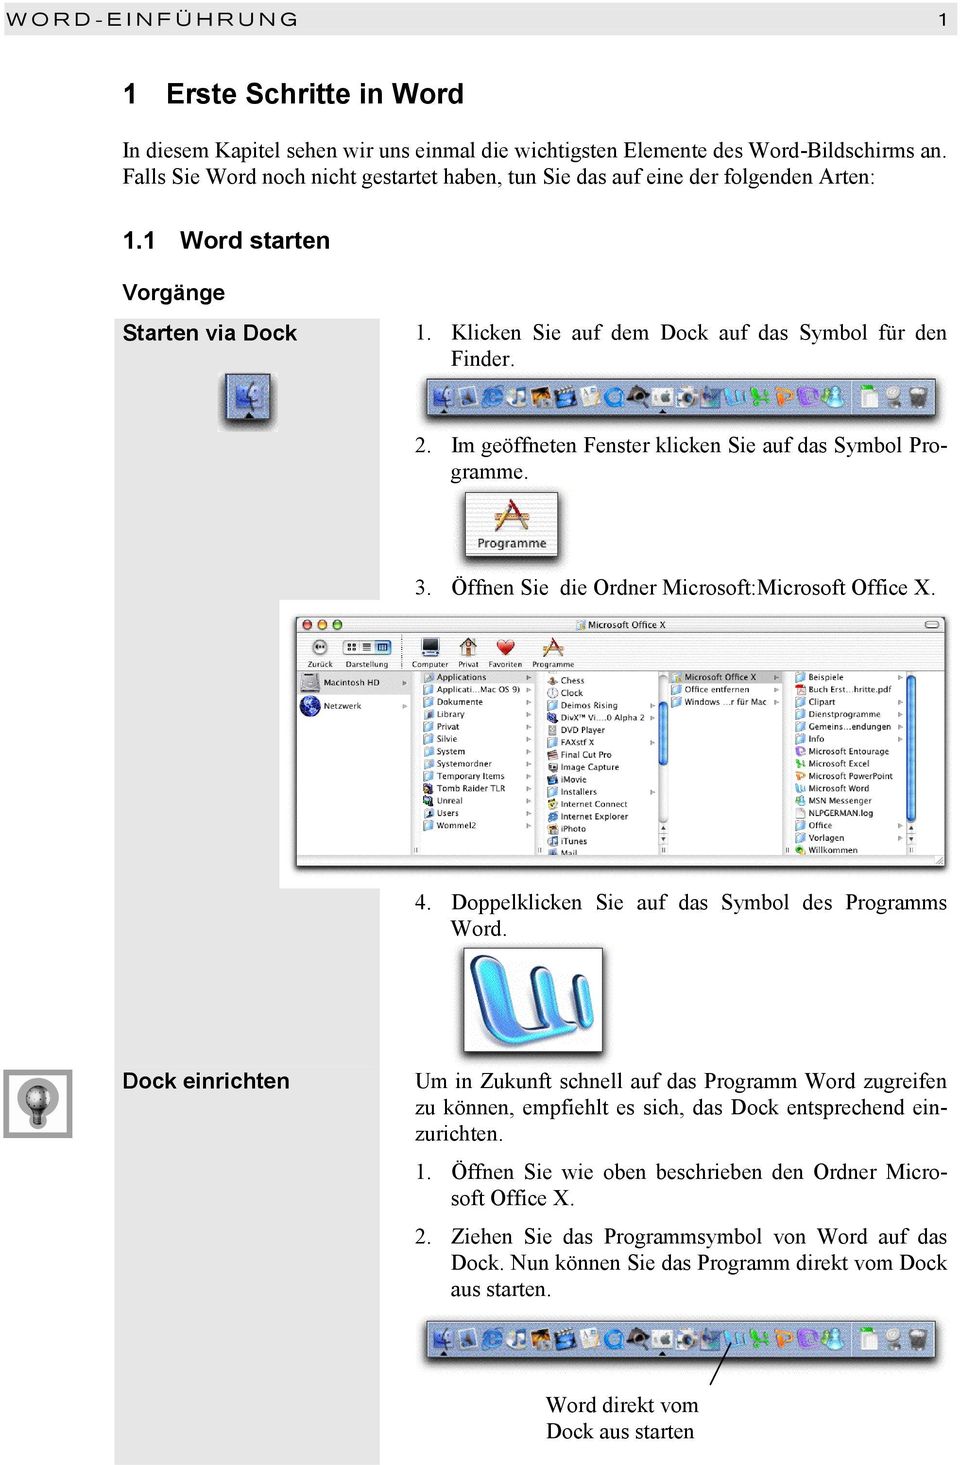 Im geöffneten Fenster klicken Sie auf das Symbol Programme. 3. Öffnen Sie die Ordner Microsoft:Microsoft Office X. 4. Doppelklicken Sie auf das Symbol des Programms Word.